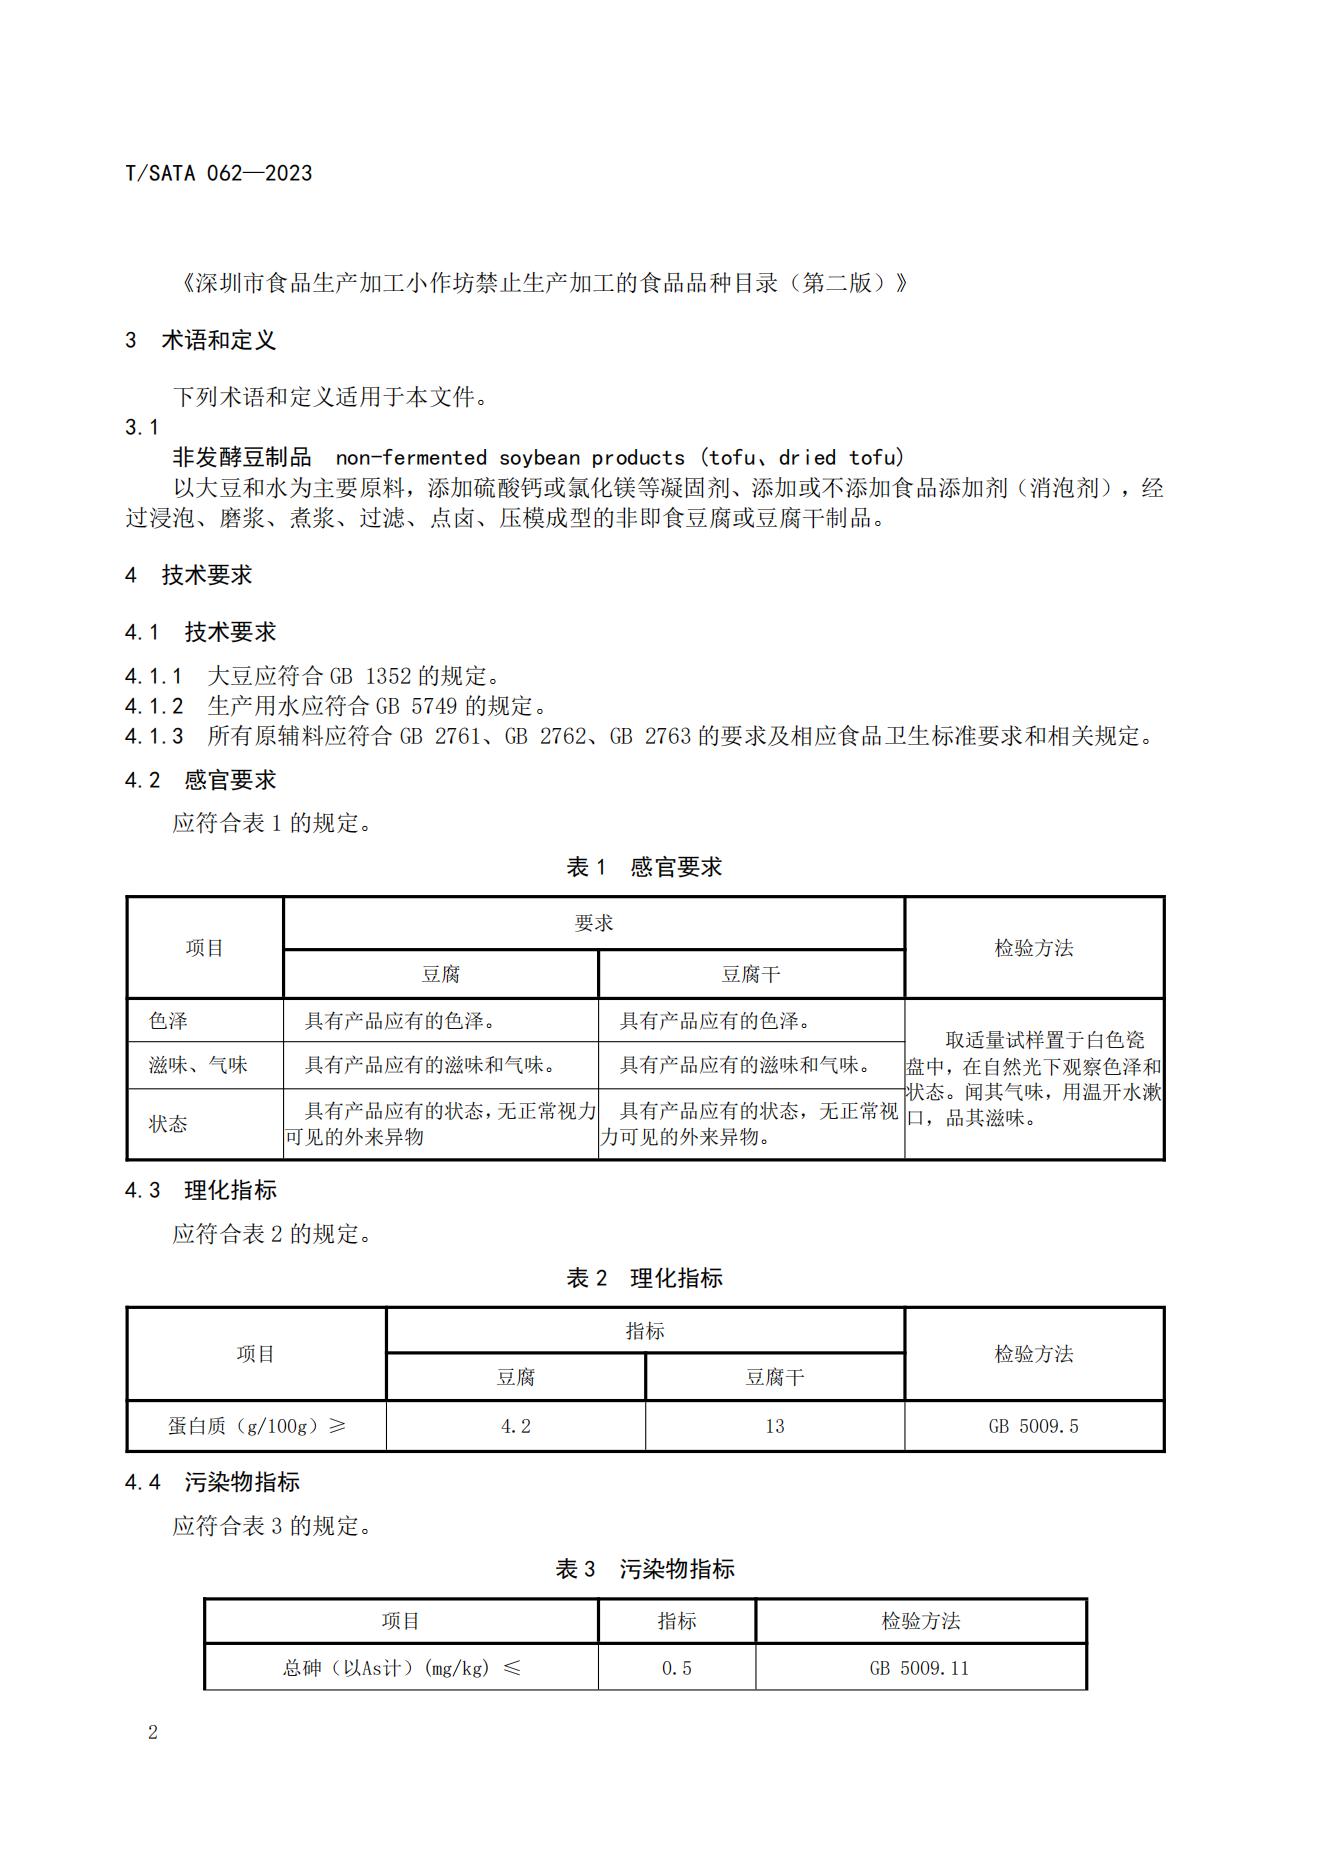 TSATA 062-2023标准文本-小作坊食品  非发酵豆制品（豆腐、豆腐干）_05.jpg